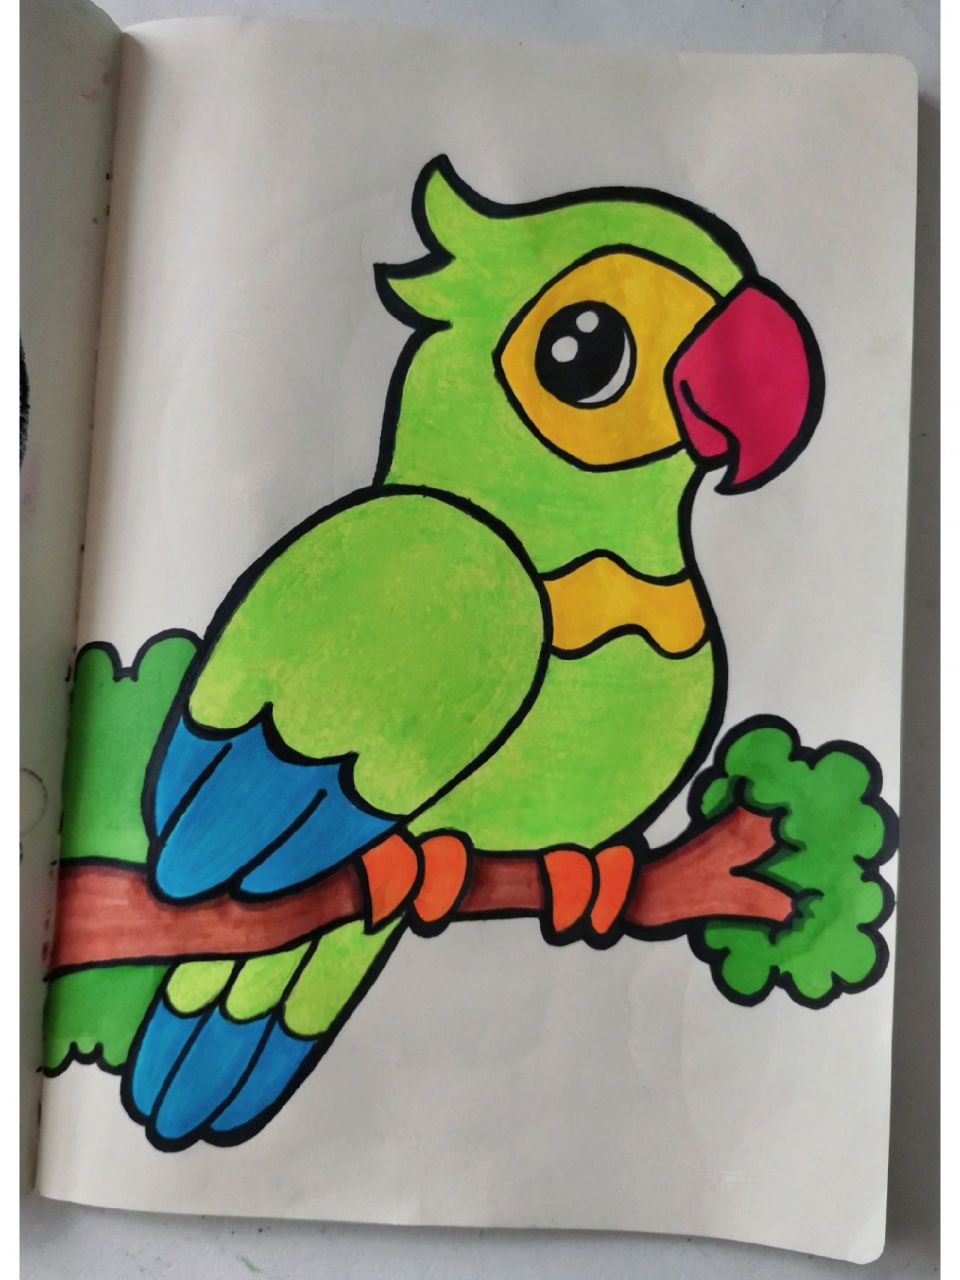 鹦鹉简笔画儿童图片